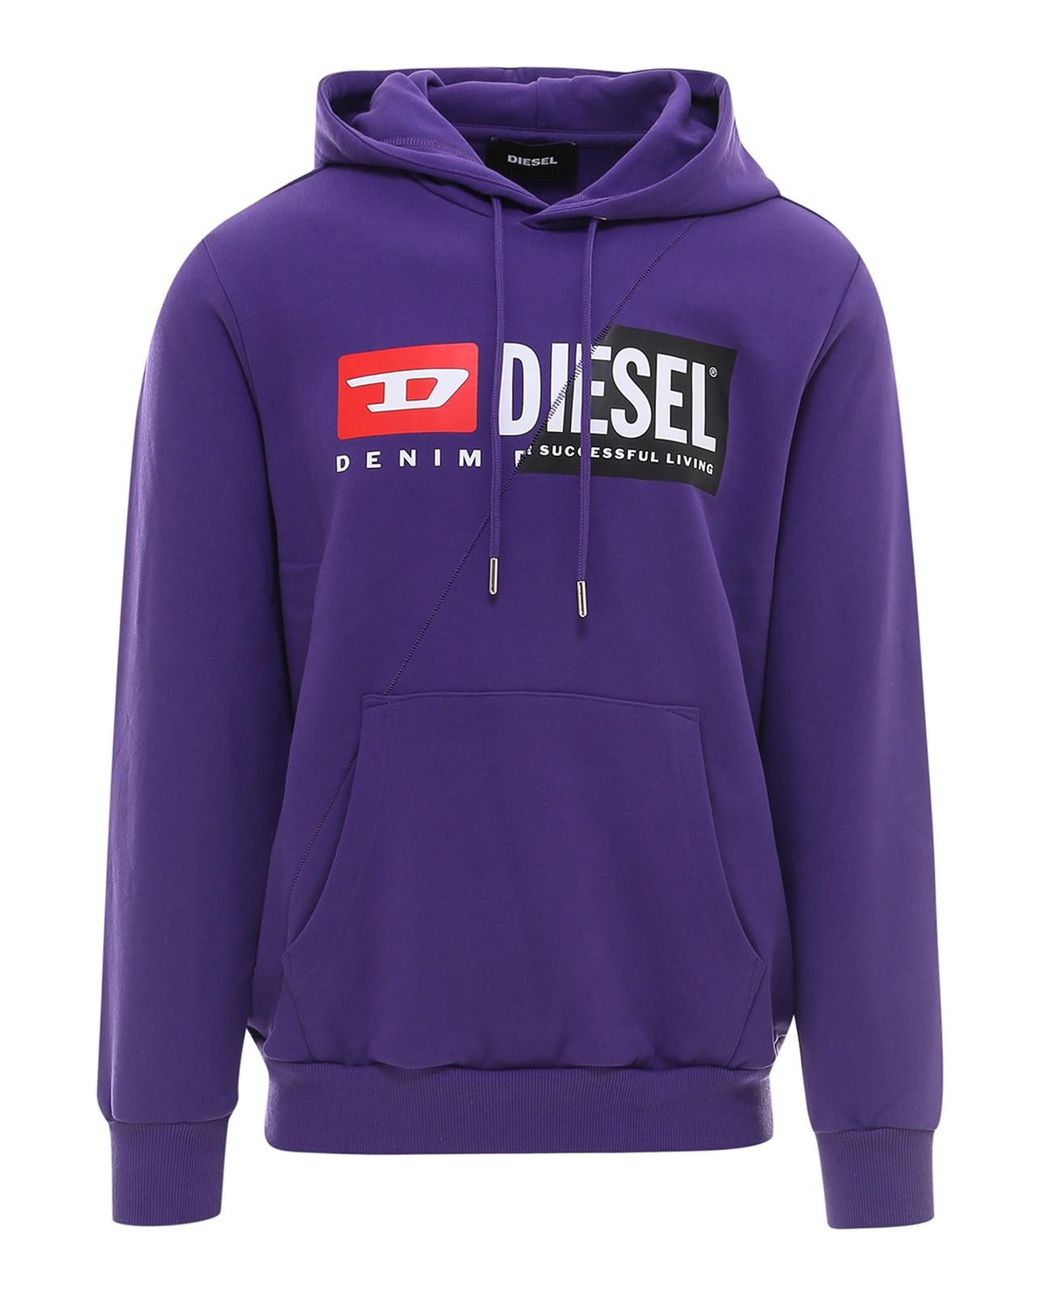 DIESEL Cotton S-girk-hood-cuty Sweatshirt in Purple for Men - Lyst